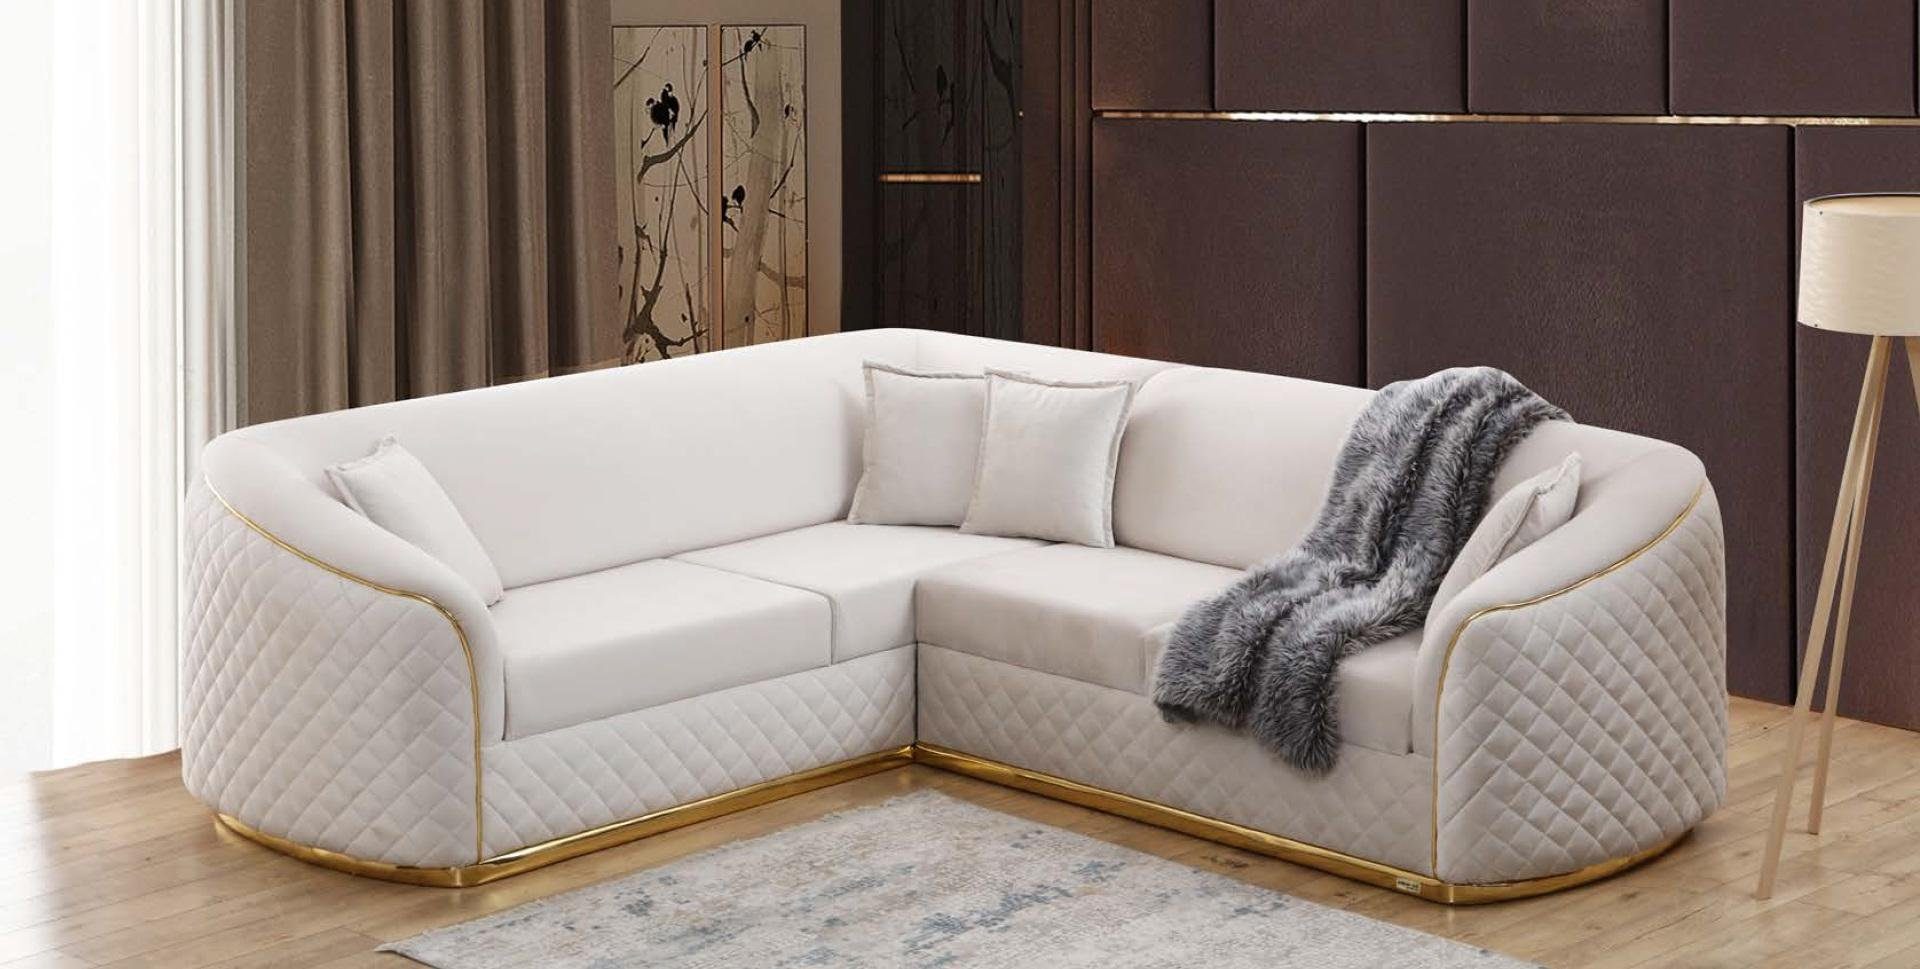 JVmoebel Ecksofa Textil Eckgarnitur Sofa Ecksofa Design Eckcouch Wohnzimmer Couch